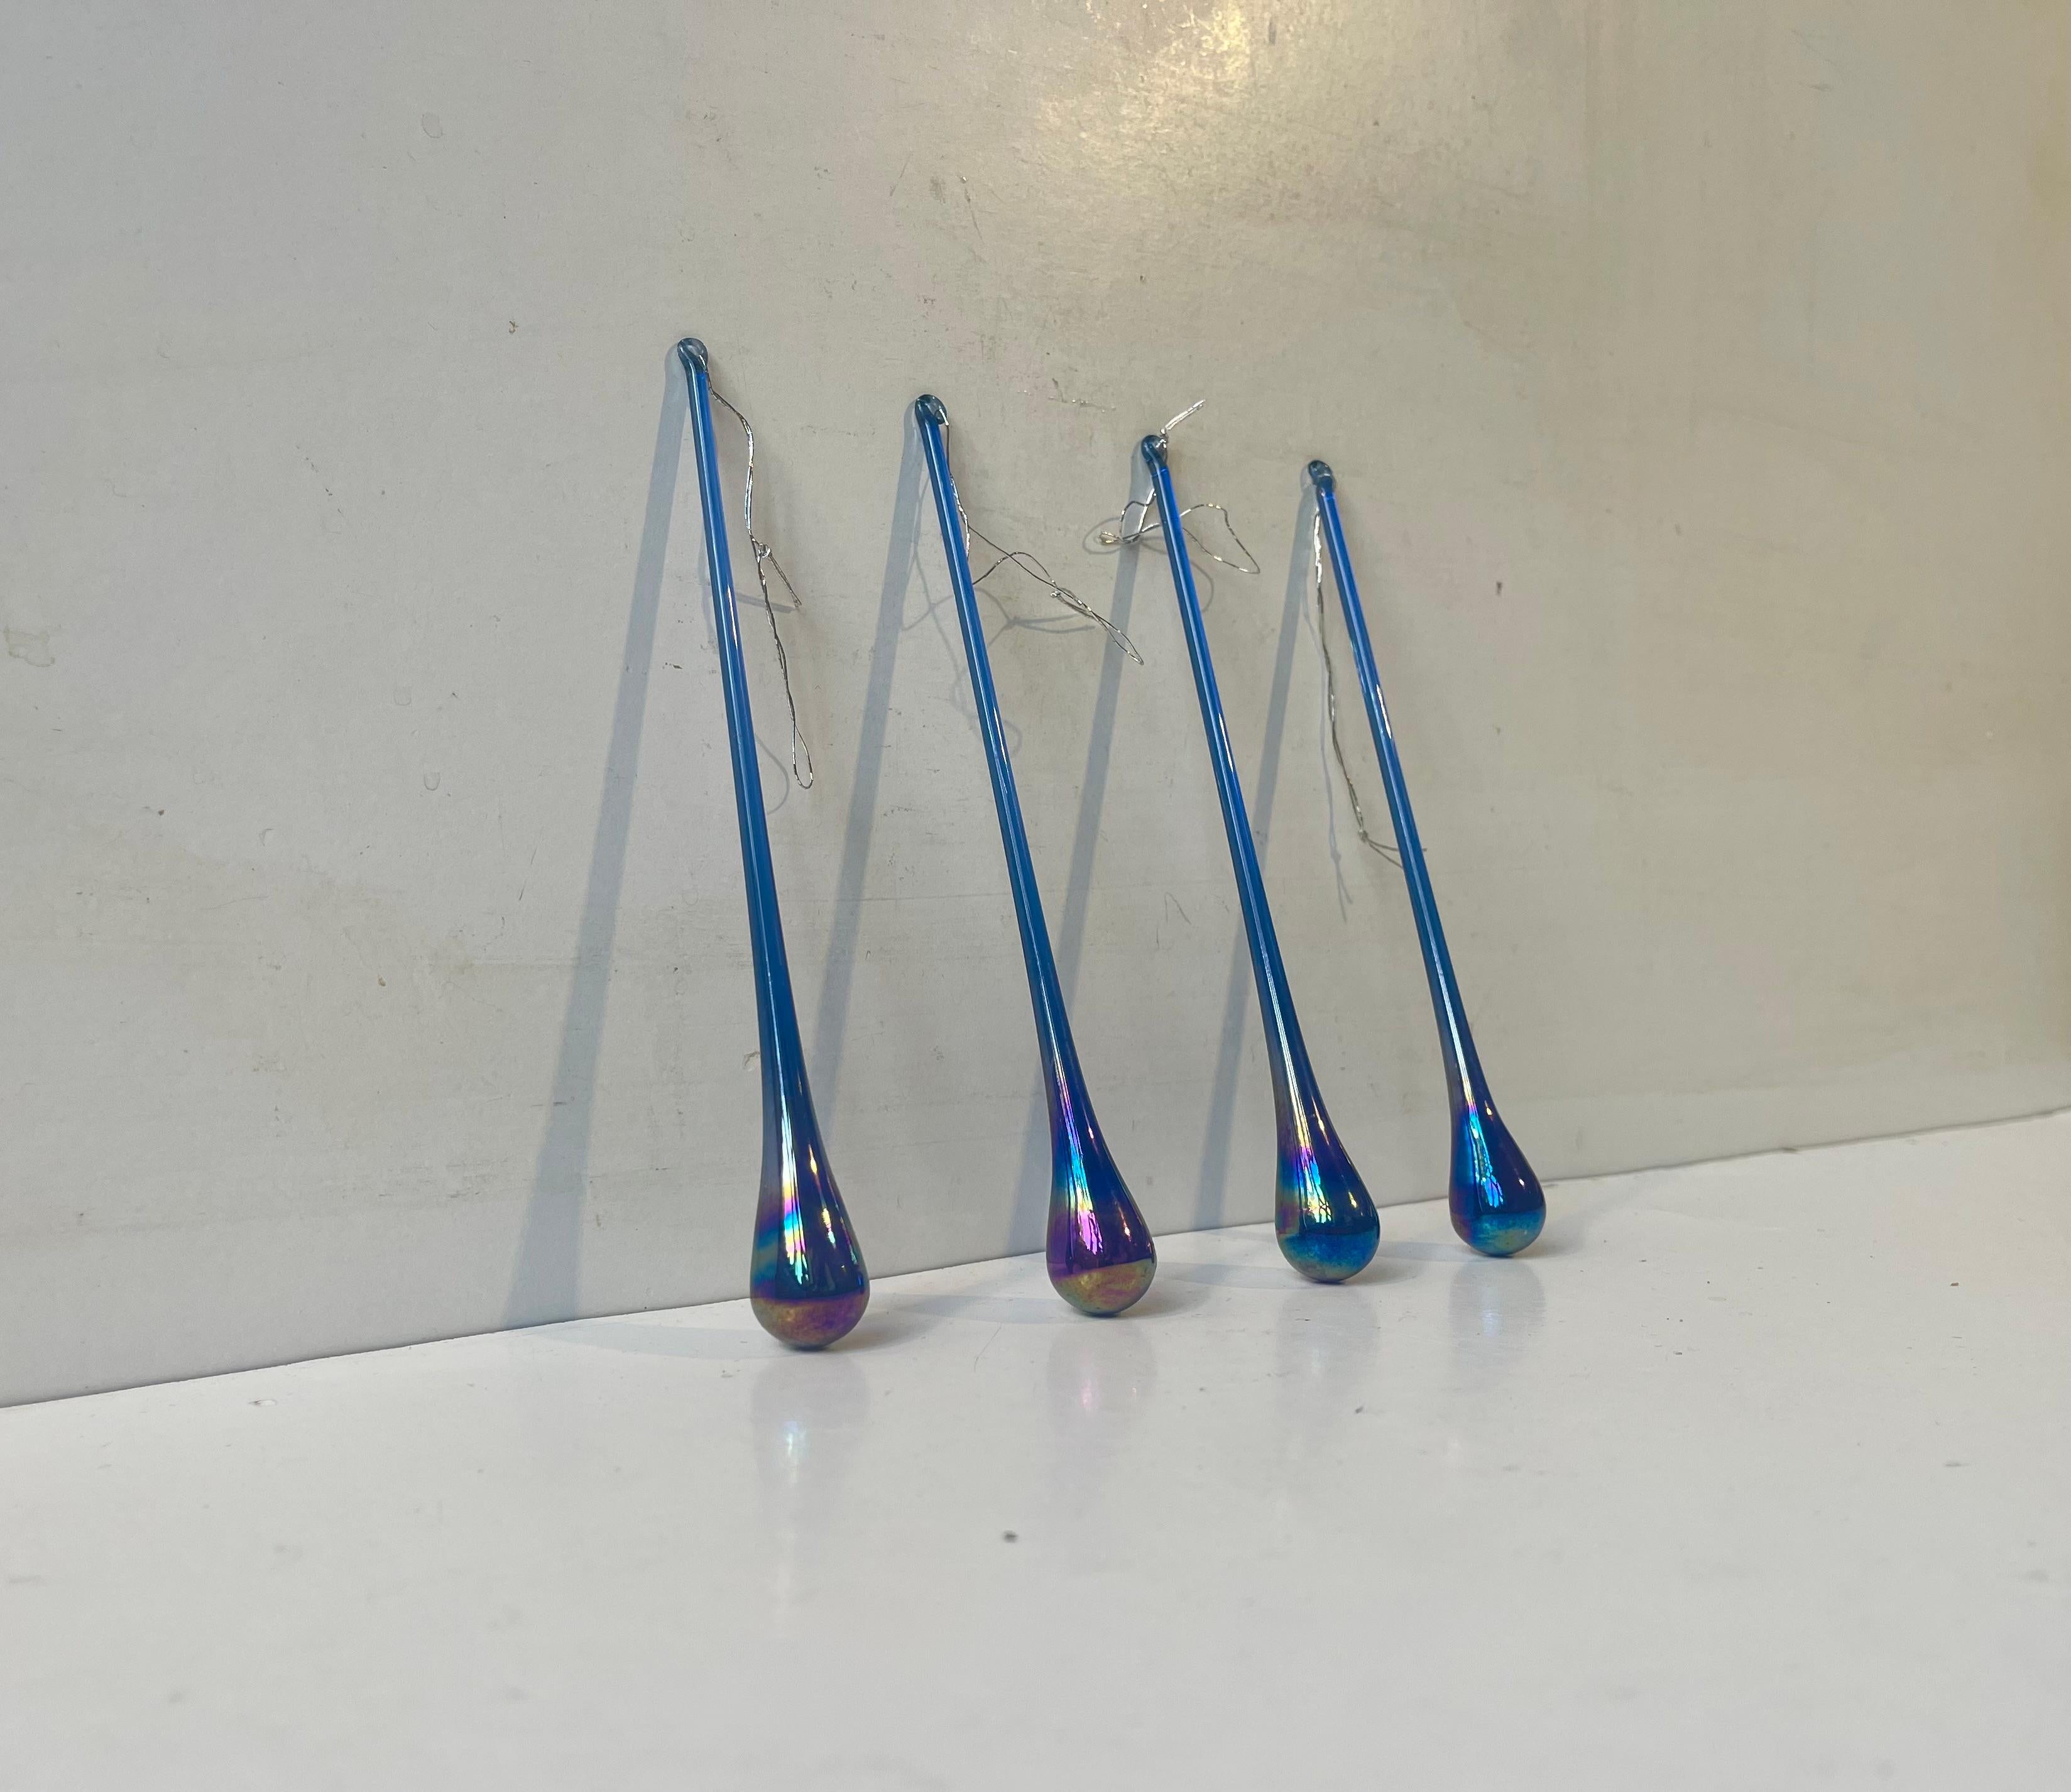 Un ensemble de 4 ornements en verre en forme de goutte d'eau ou d'attrape-soleil en verre bleu cobalt irridescent. Verrier scandinave inconnu vers 1970-80. Dimensions : H : 15 cm (sans le cordon), l/d : 2/2 cm. Le prix est pour le lot de 4.